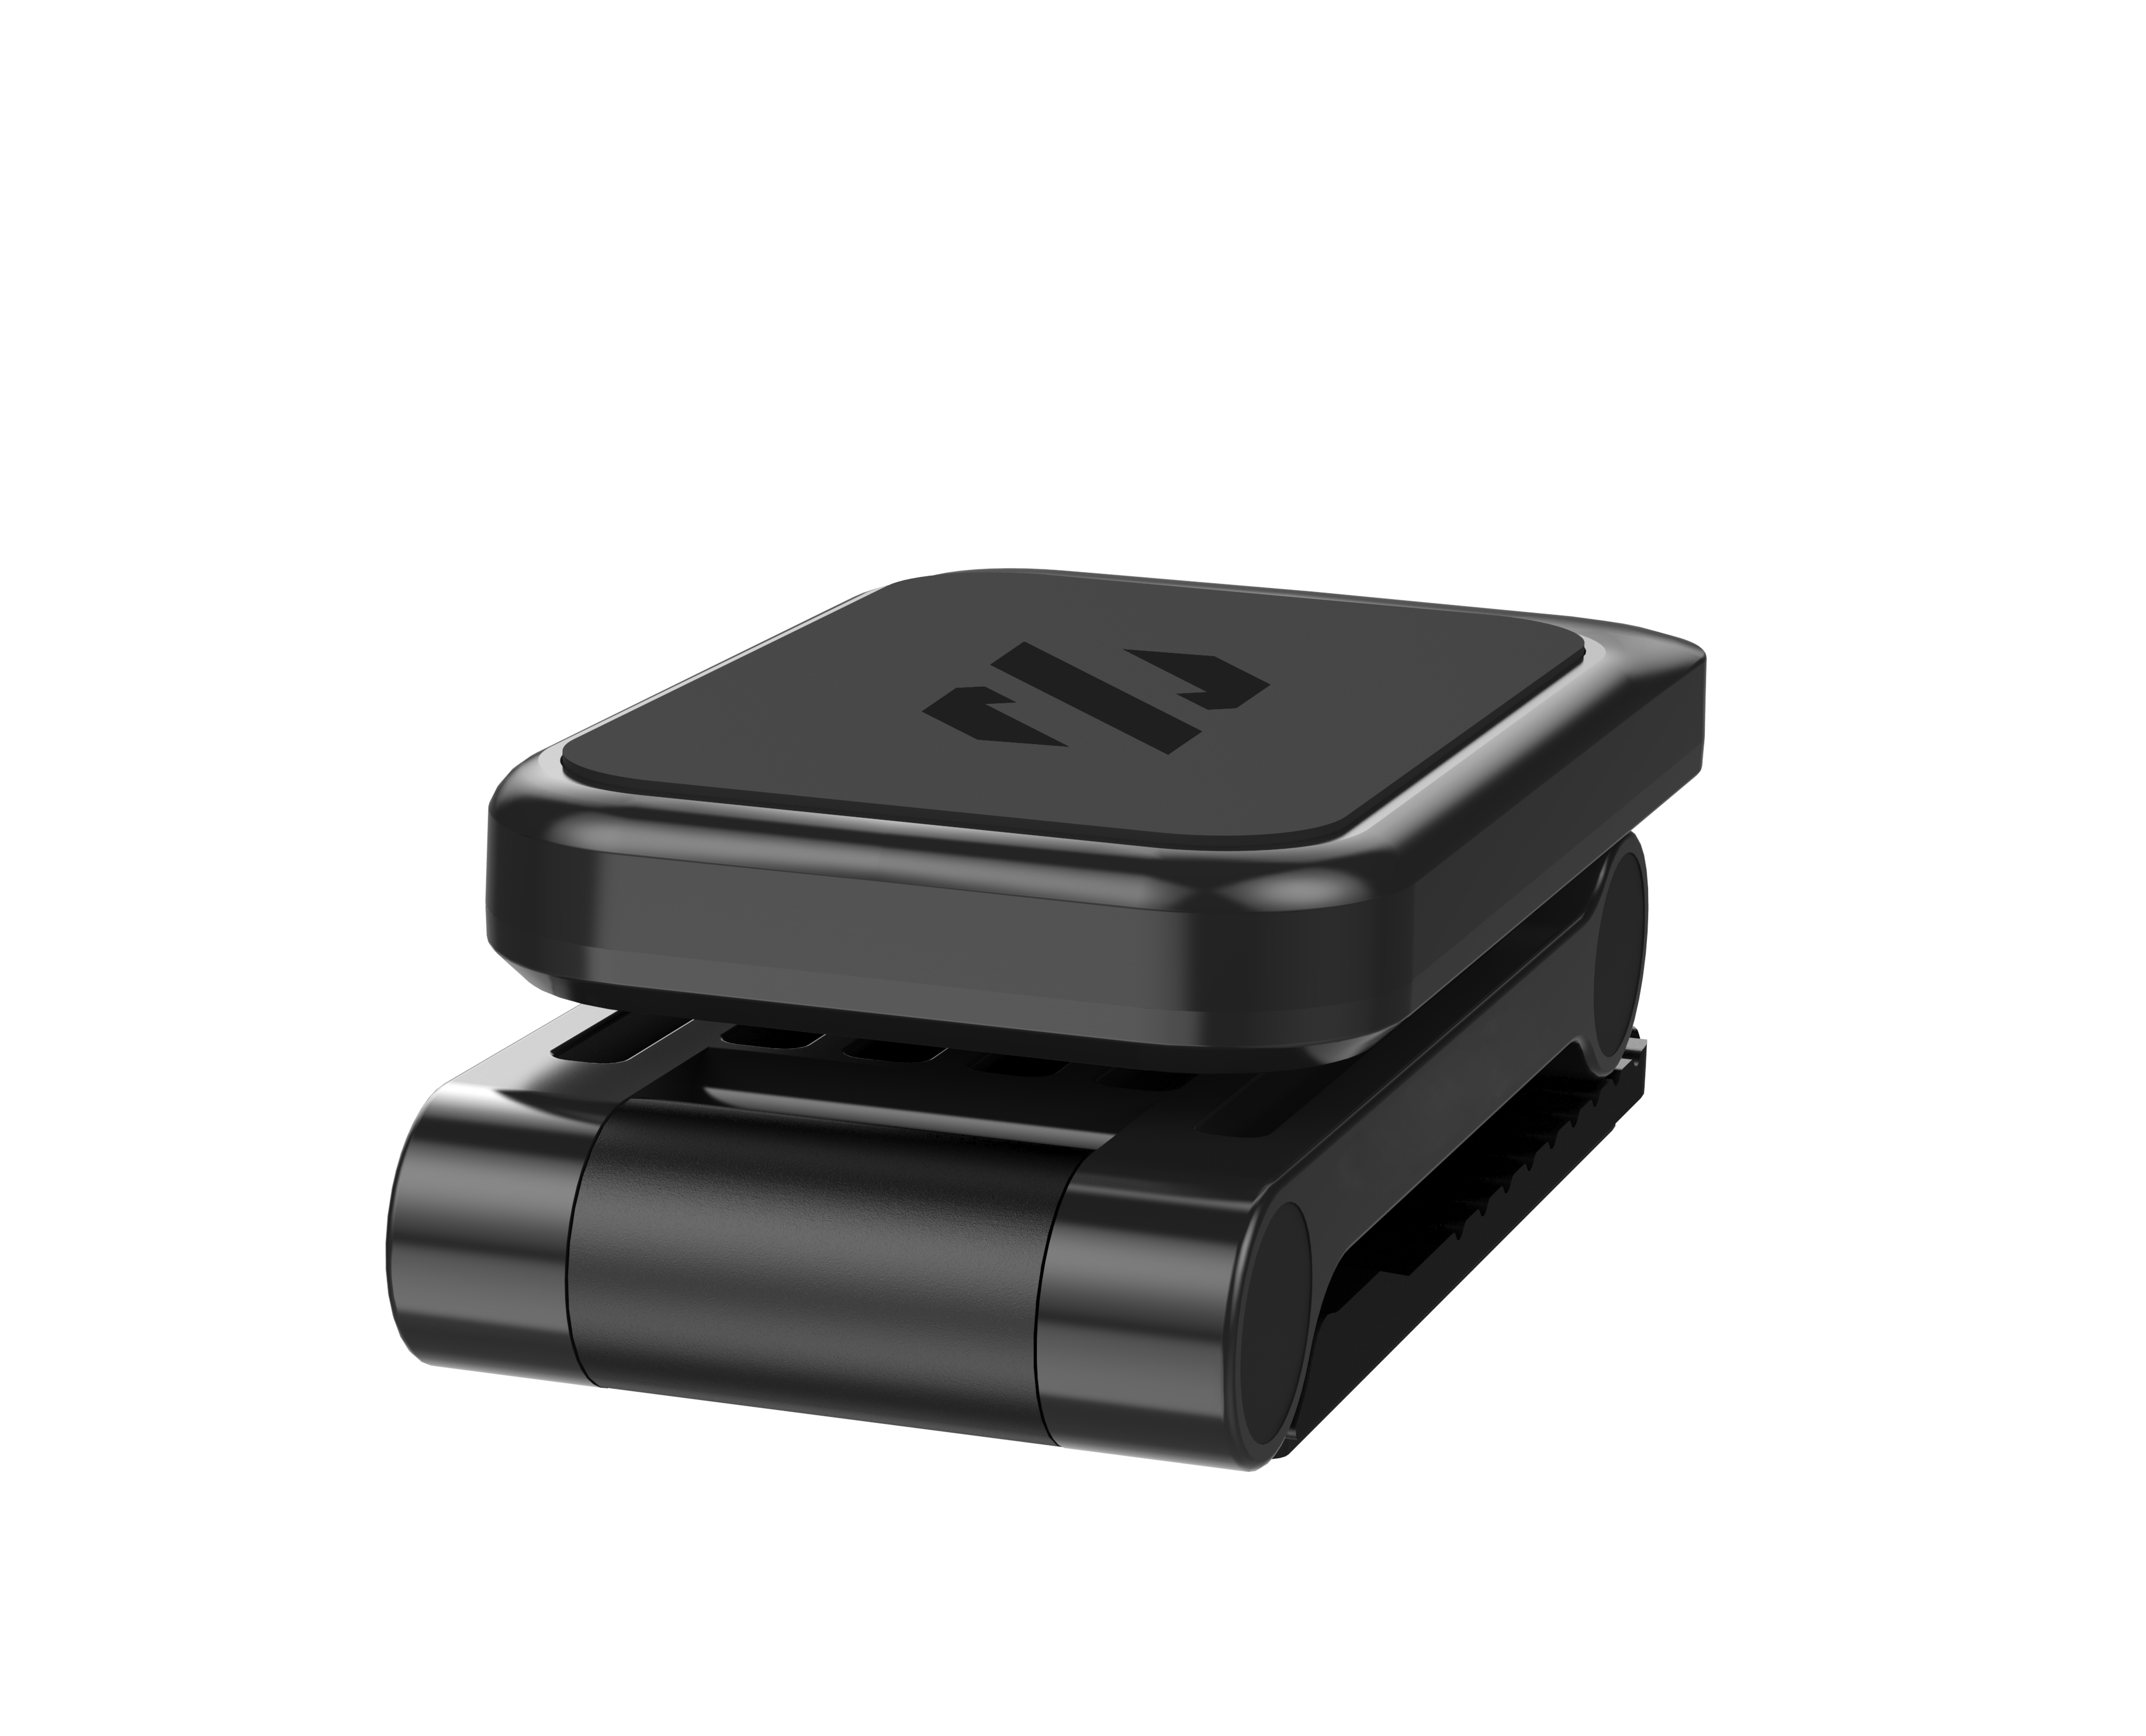 SKYVIK Truhold Multiway Magnetic Mobile Holder for Car Dashboard